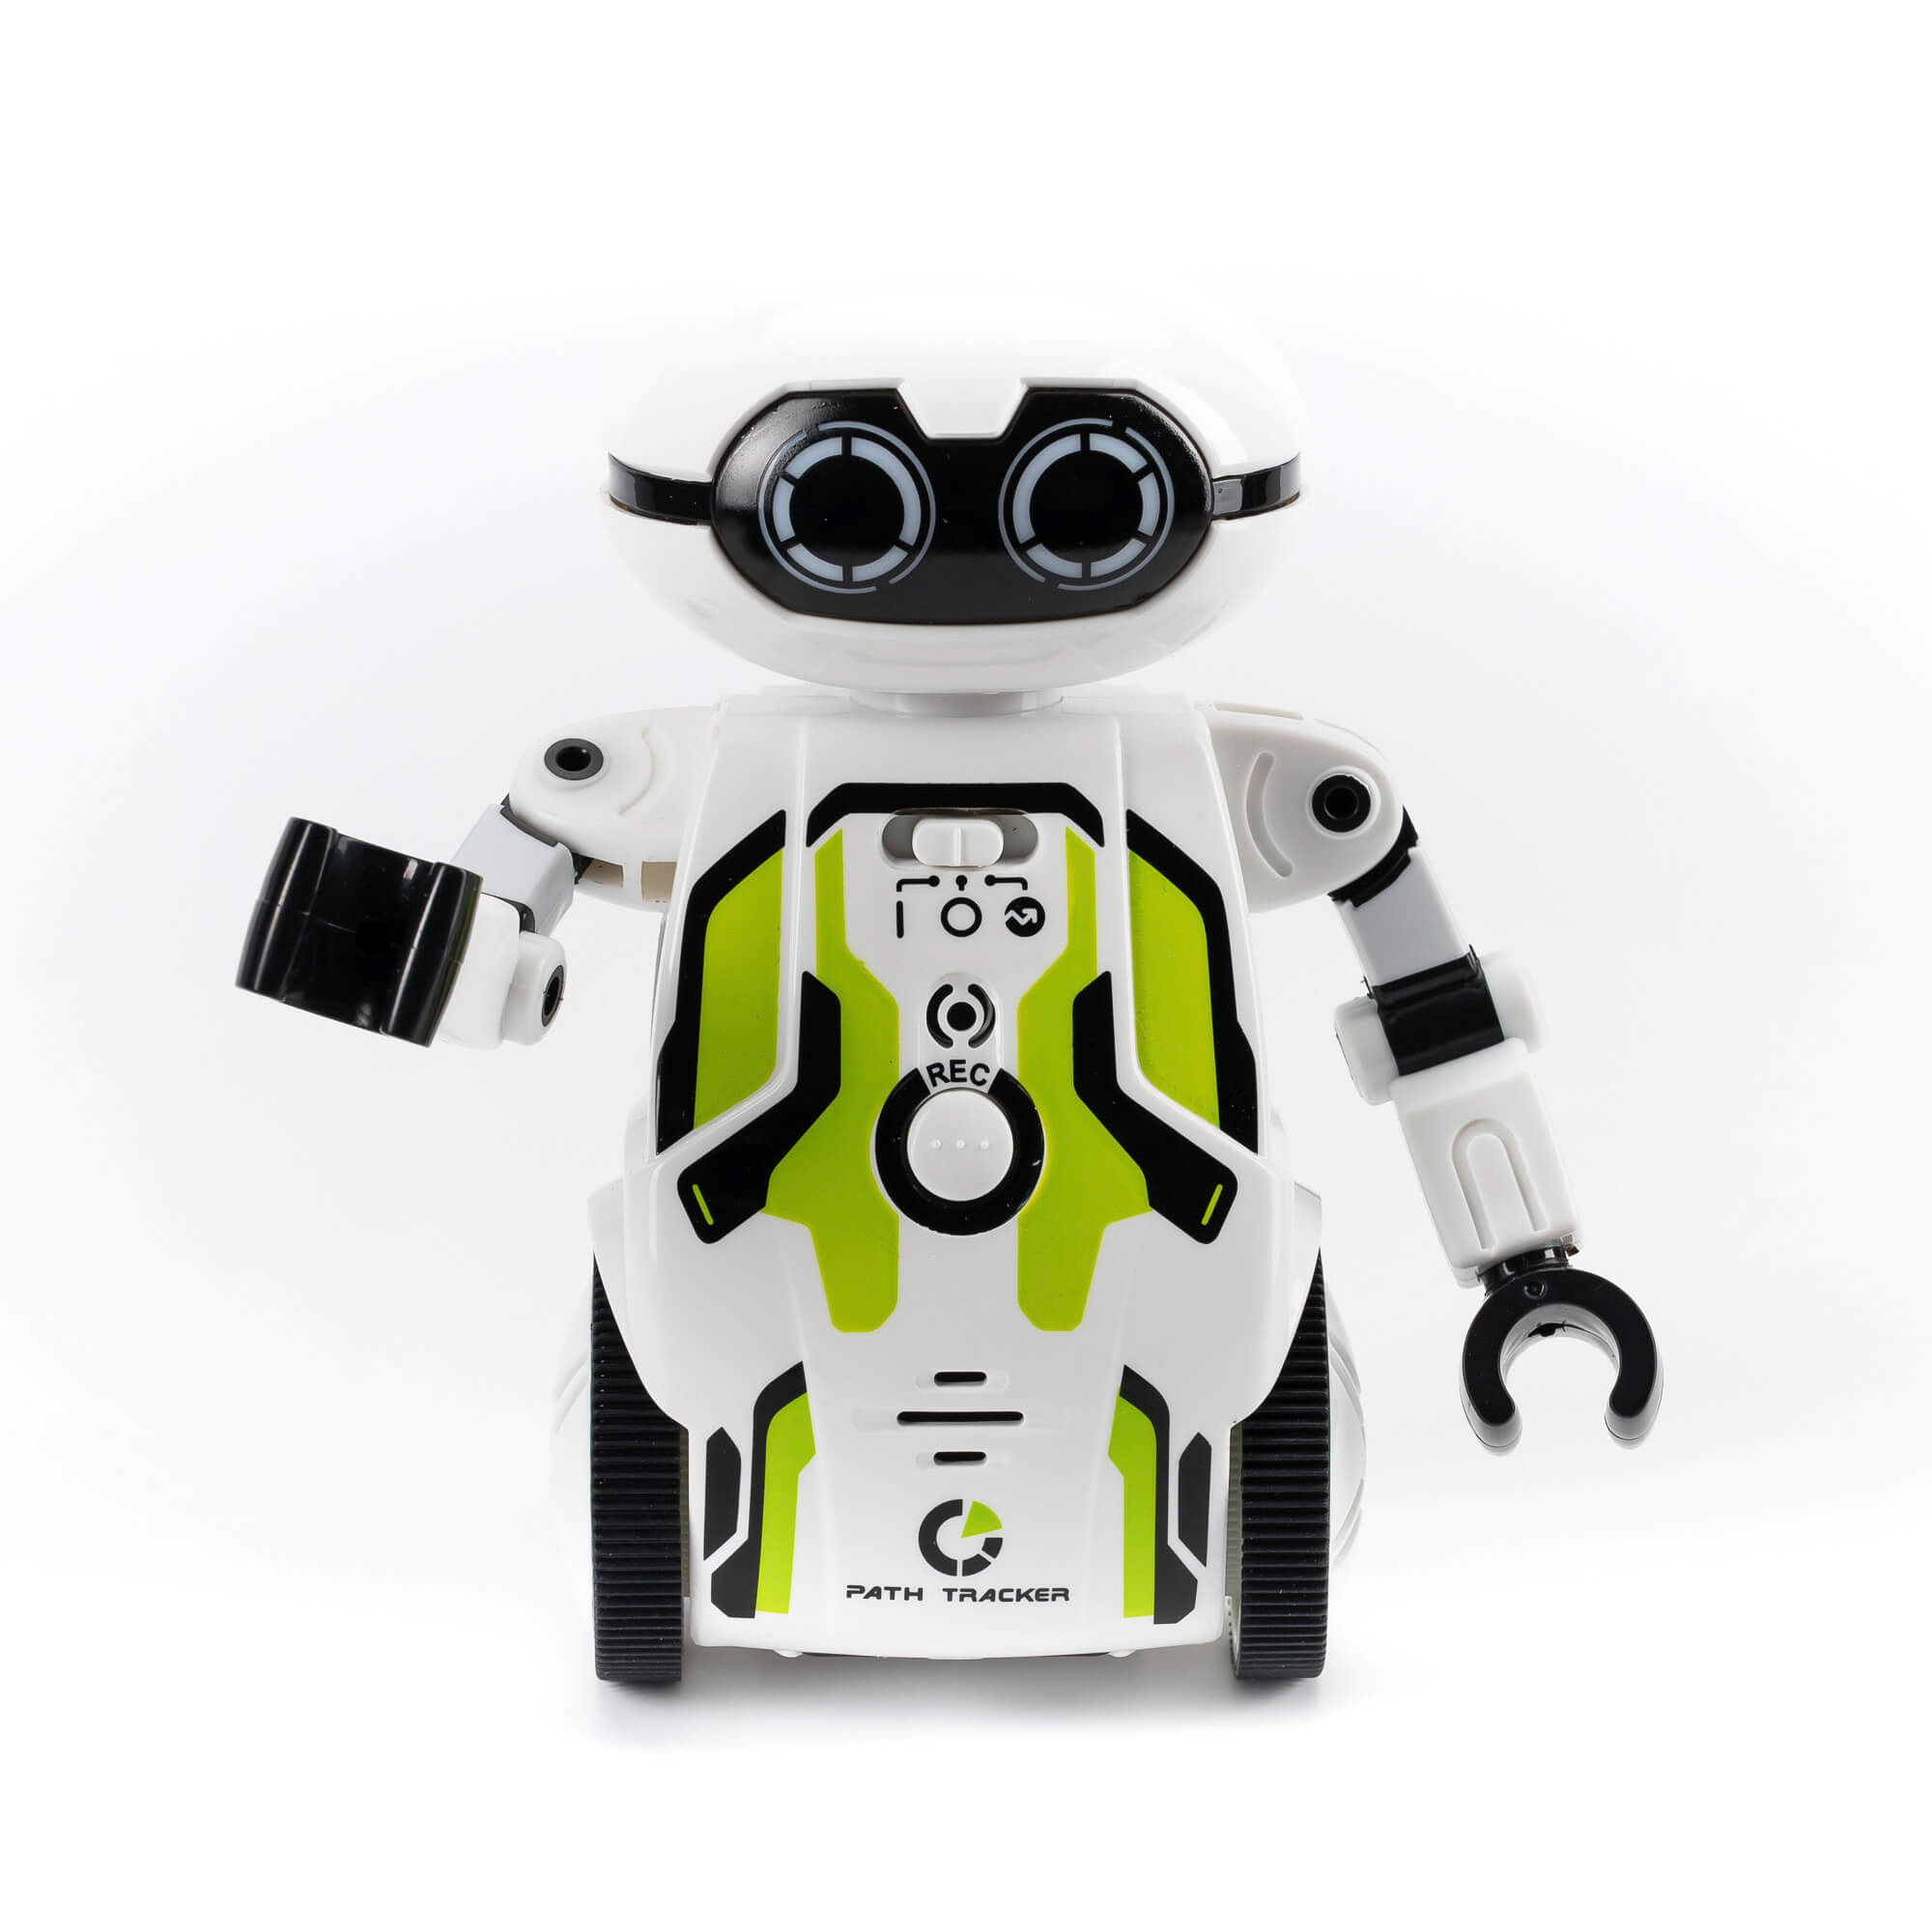 Silverlit Робот 88044-1 Мэйз брейкер  зеленый (Maze Breaker) - Бугульма 